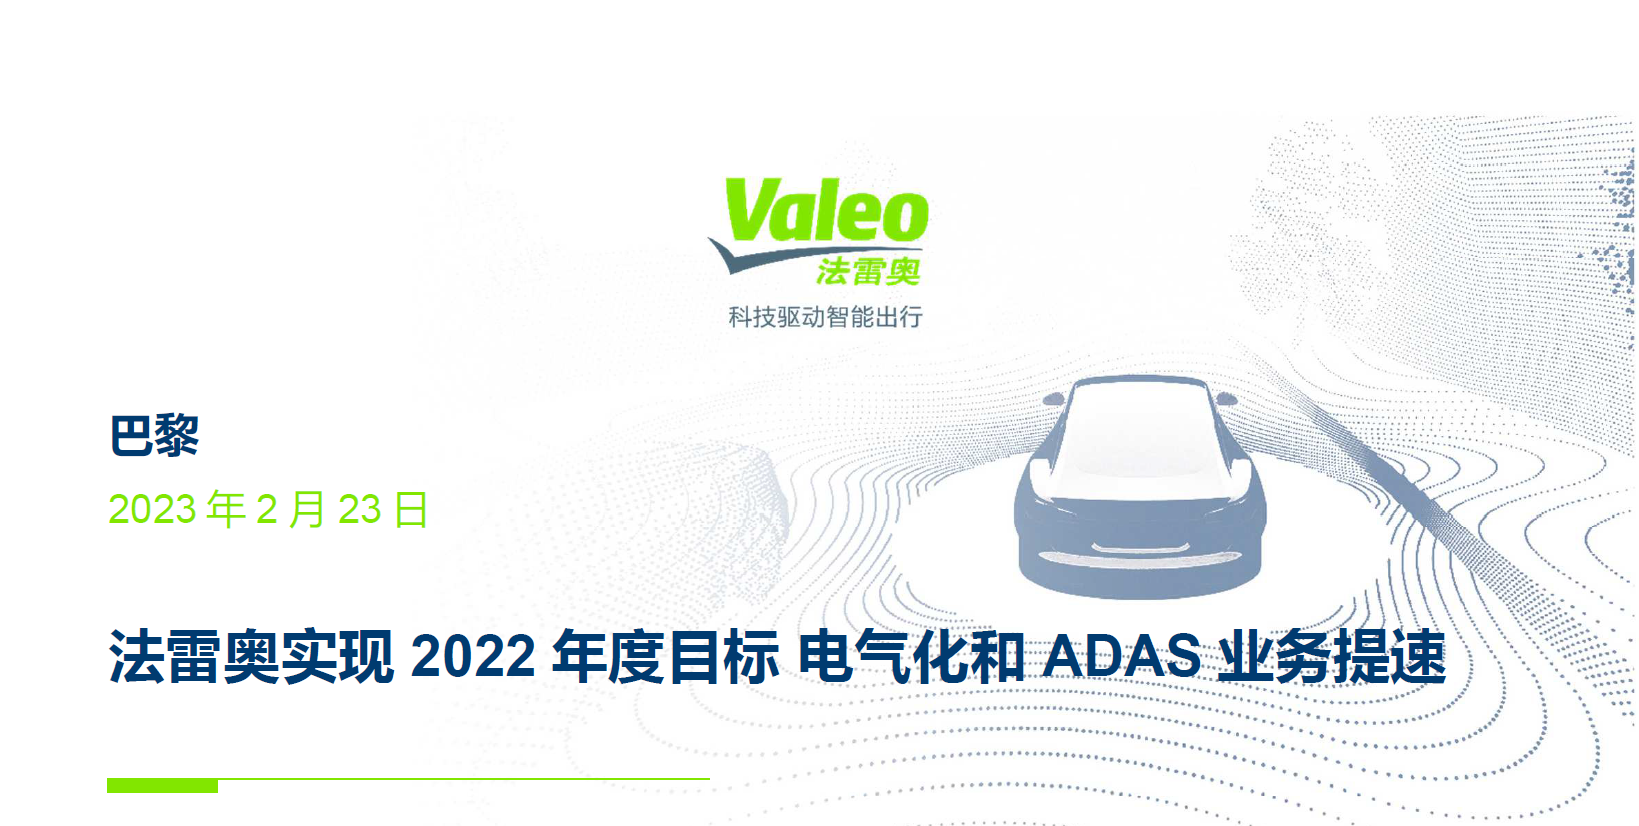 【新闻稿】法雷奥实现2022年度目标，电气化和ADAS业务提速